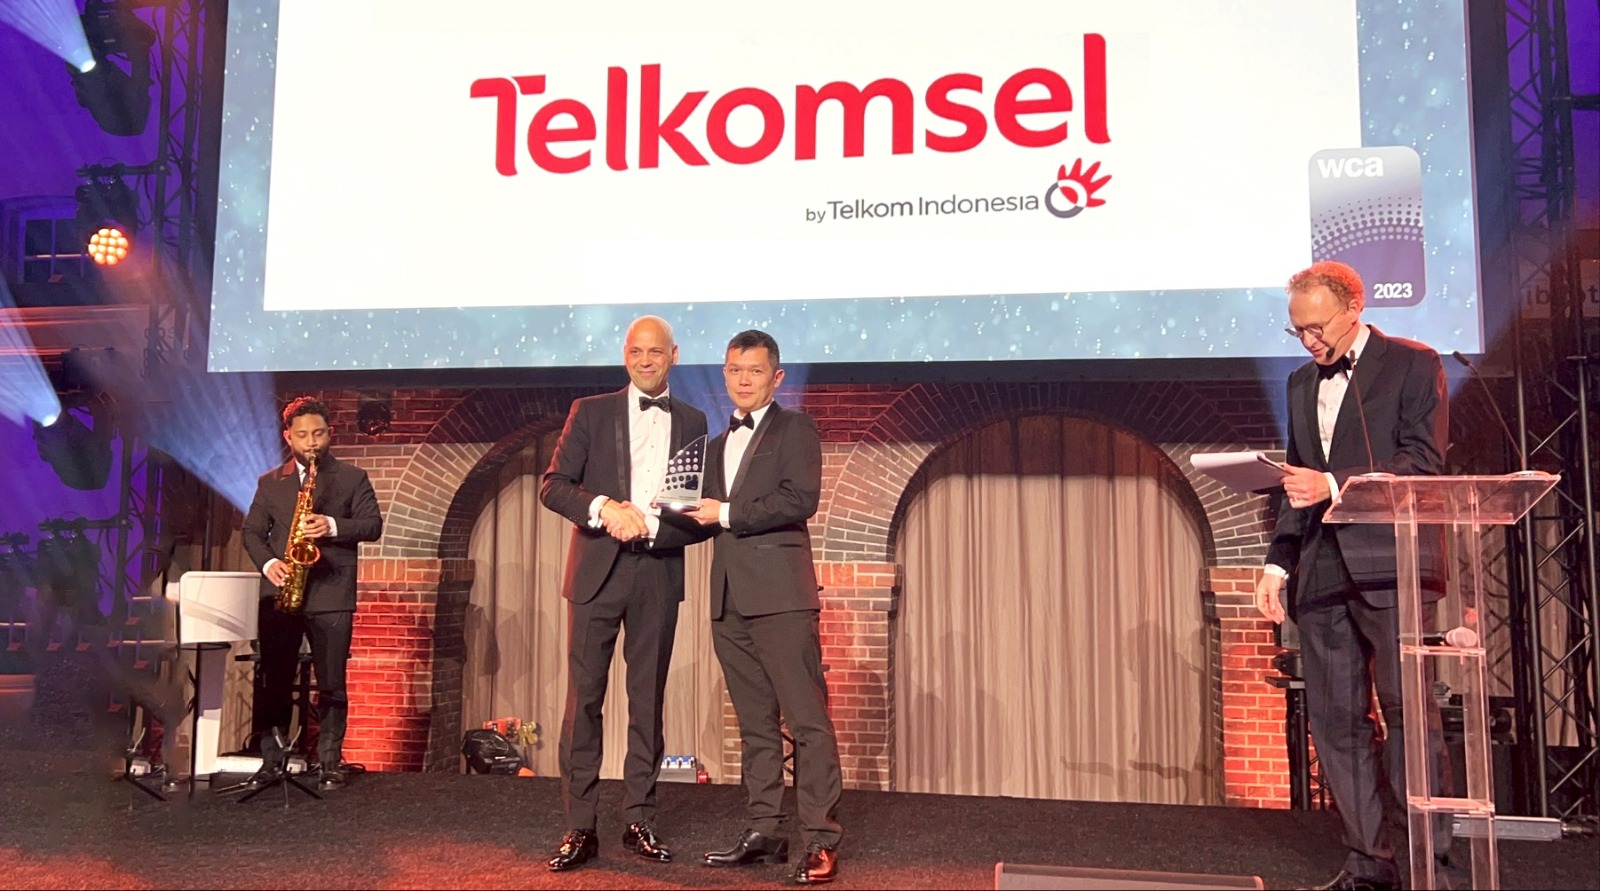 LUAR BIASA! Telkomsel Raih Penghargaan Global World Communication Award 2023 untuk Best Digital Transformation